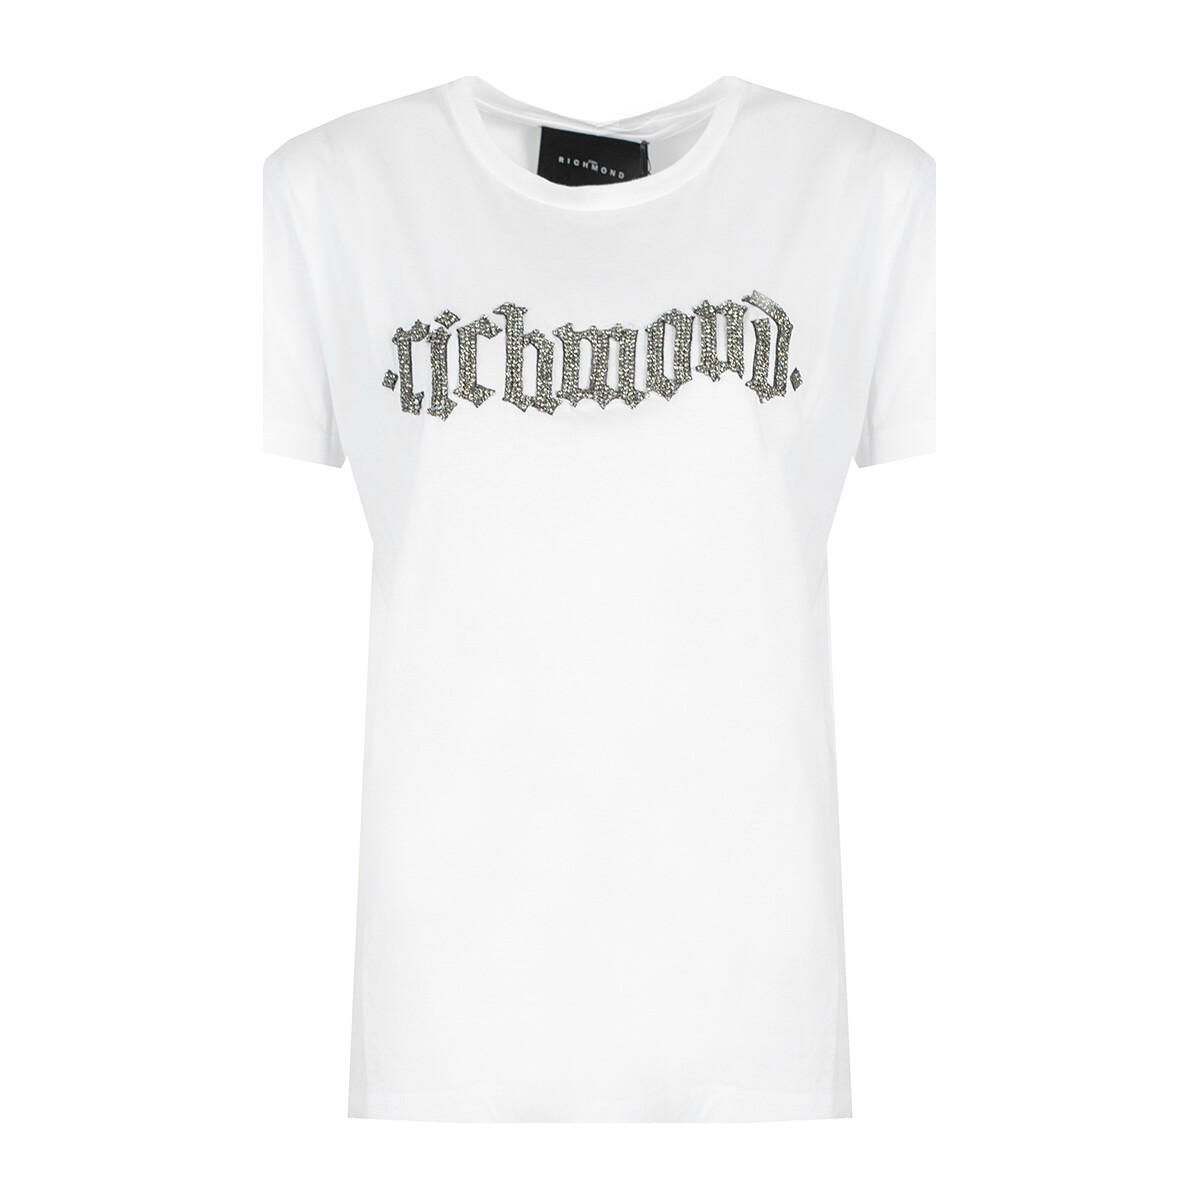 vaatteet Naiset Lyhythihainen t-paita John Richmond RWP20208TS | Nye Valkoinen